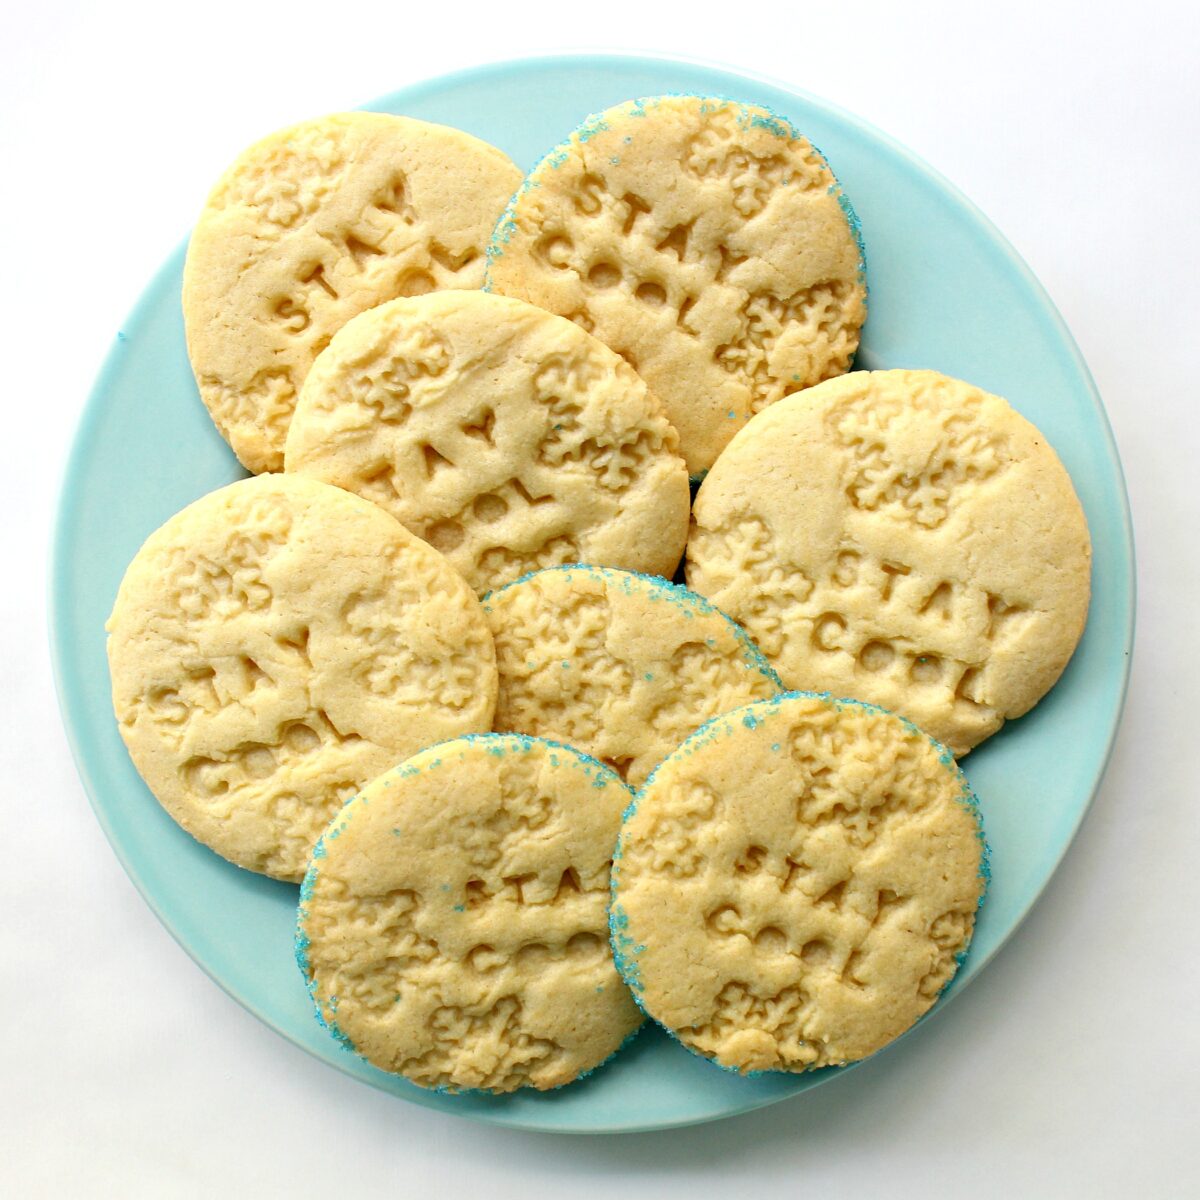 Cookies on an aqua platter.